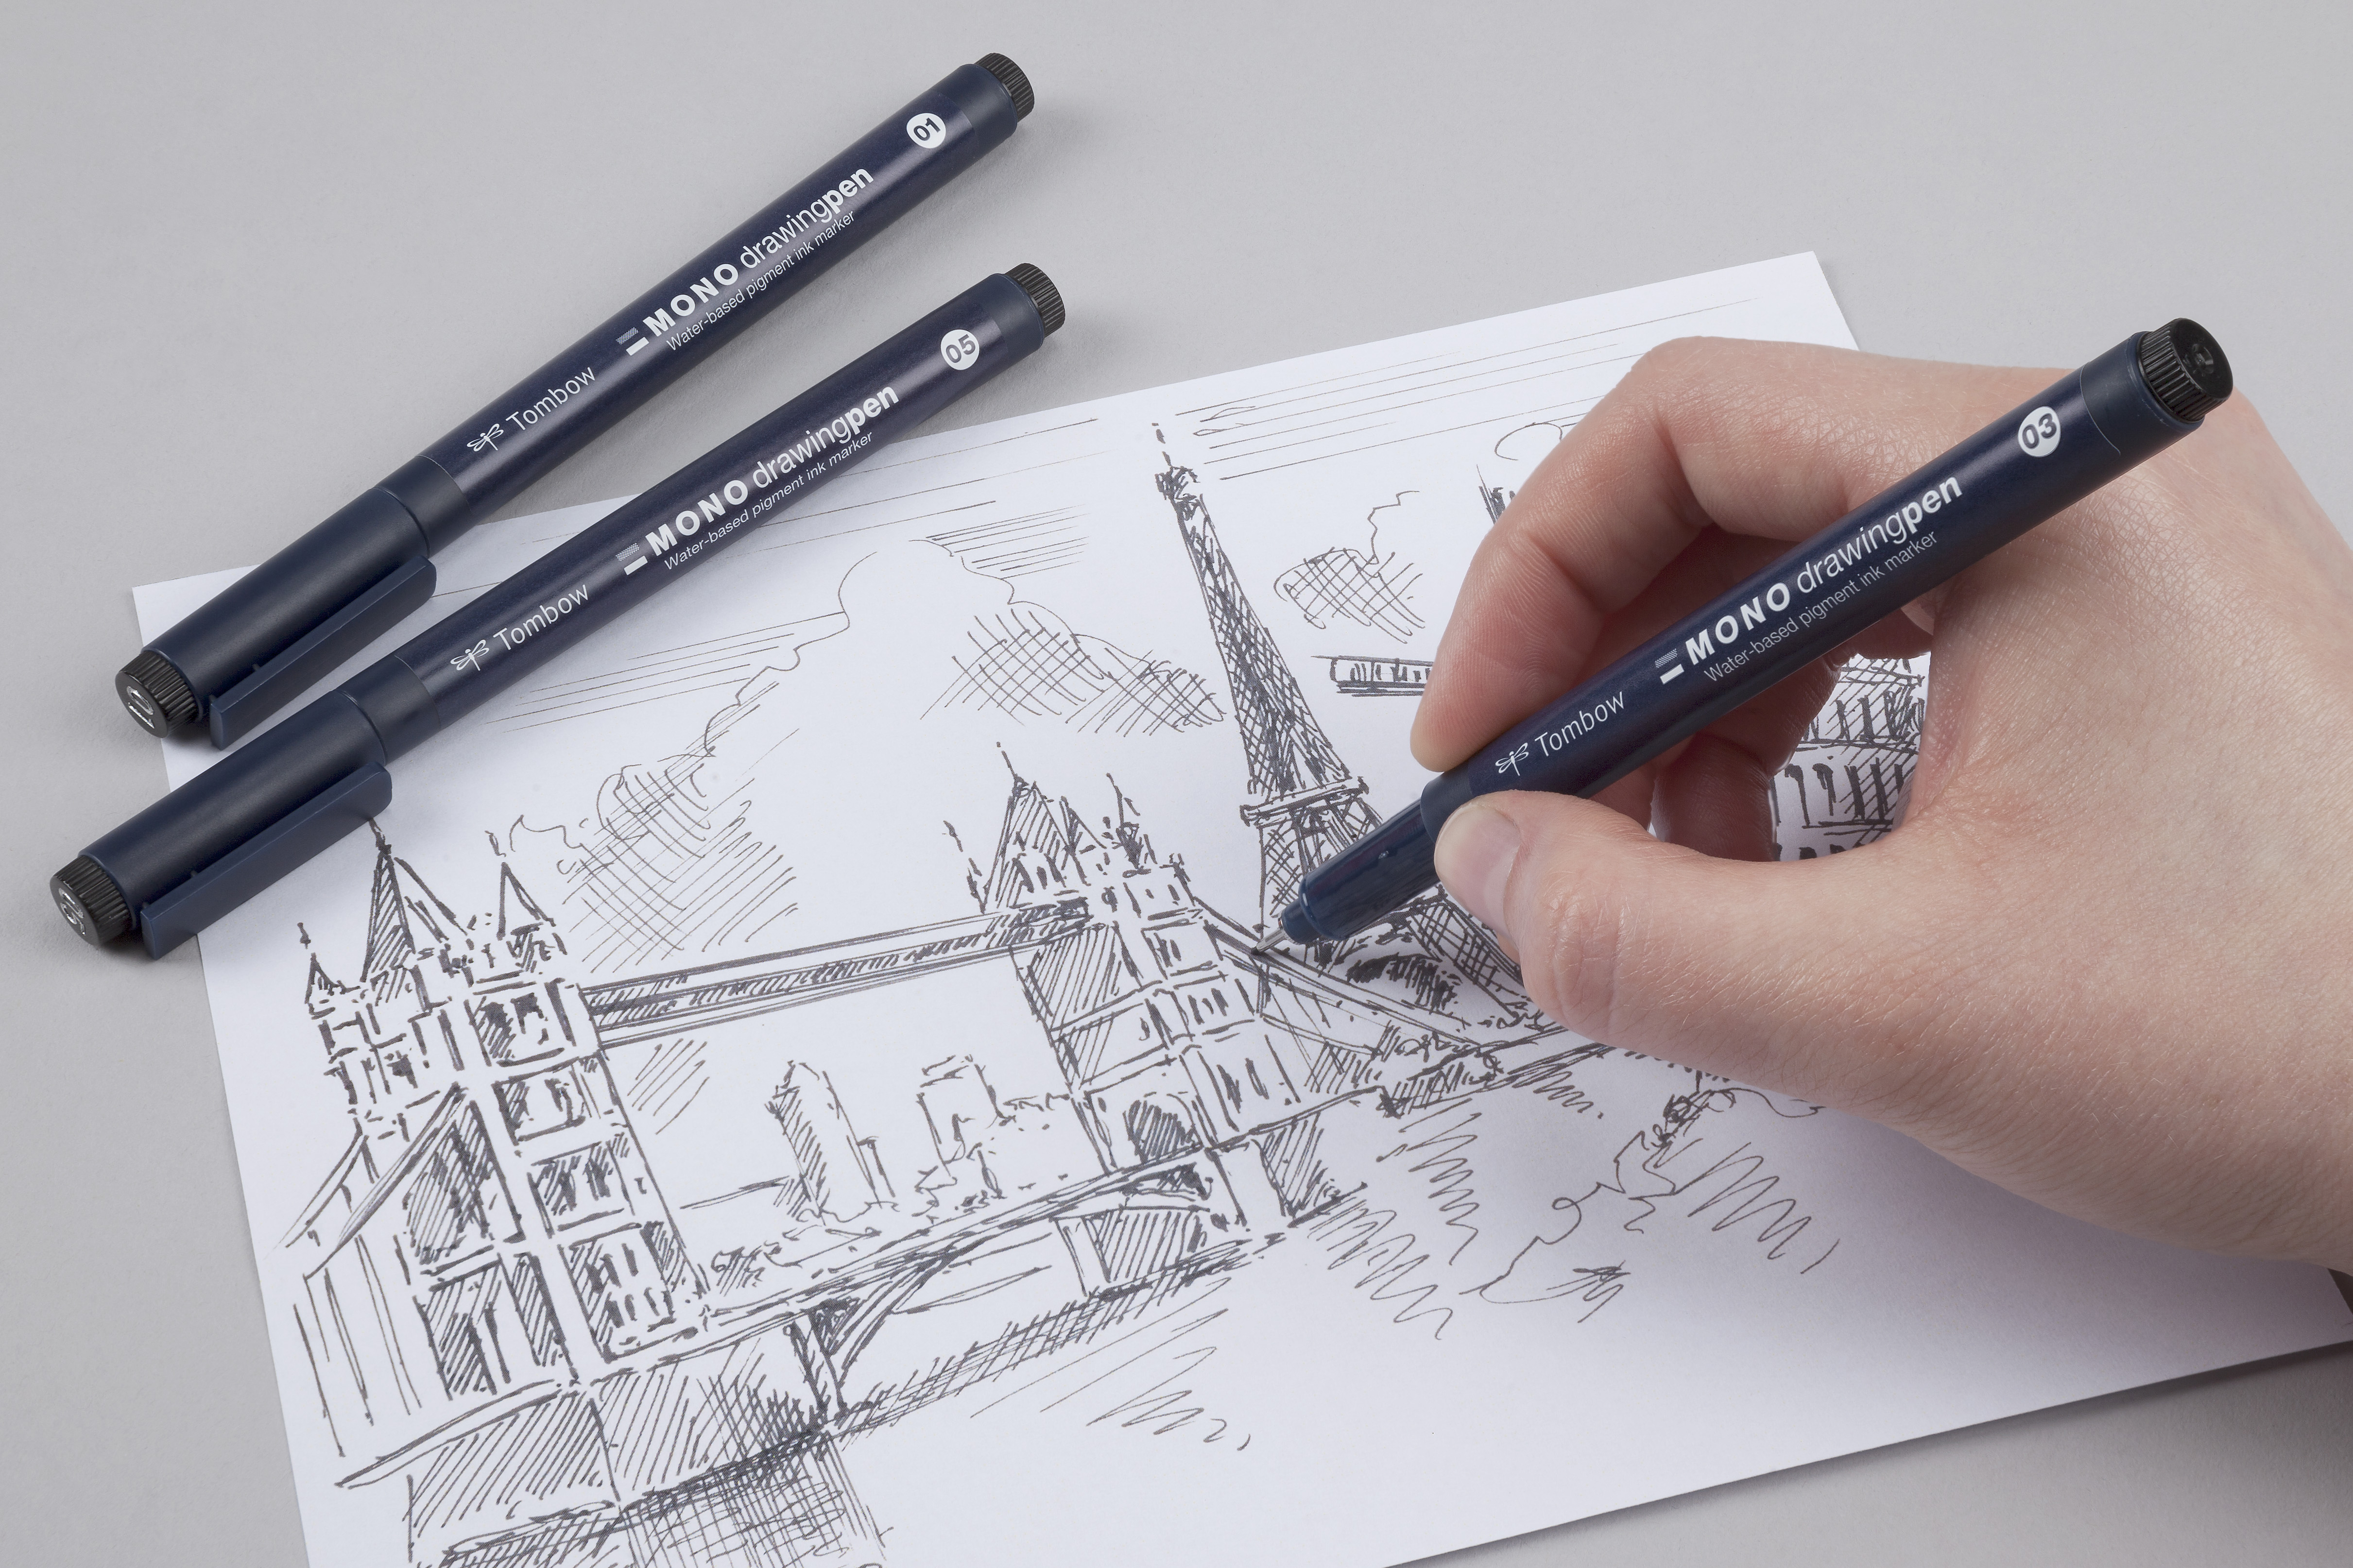 Рисуем pen. Капиллярная ручка / for drawing / ручка для графики / линер 0.05 черный. Лайнер карандаш для рисования. Рисунки лайнером. Скетчи ручкой.